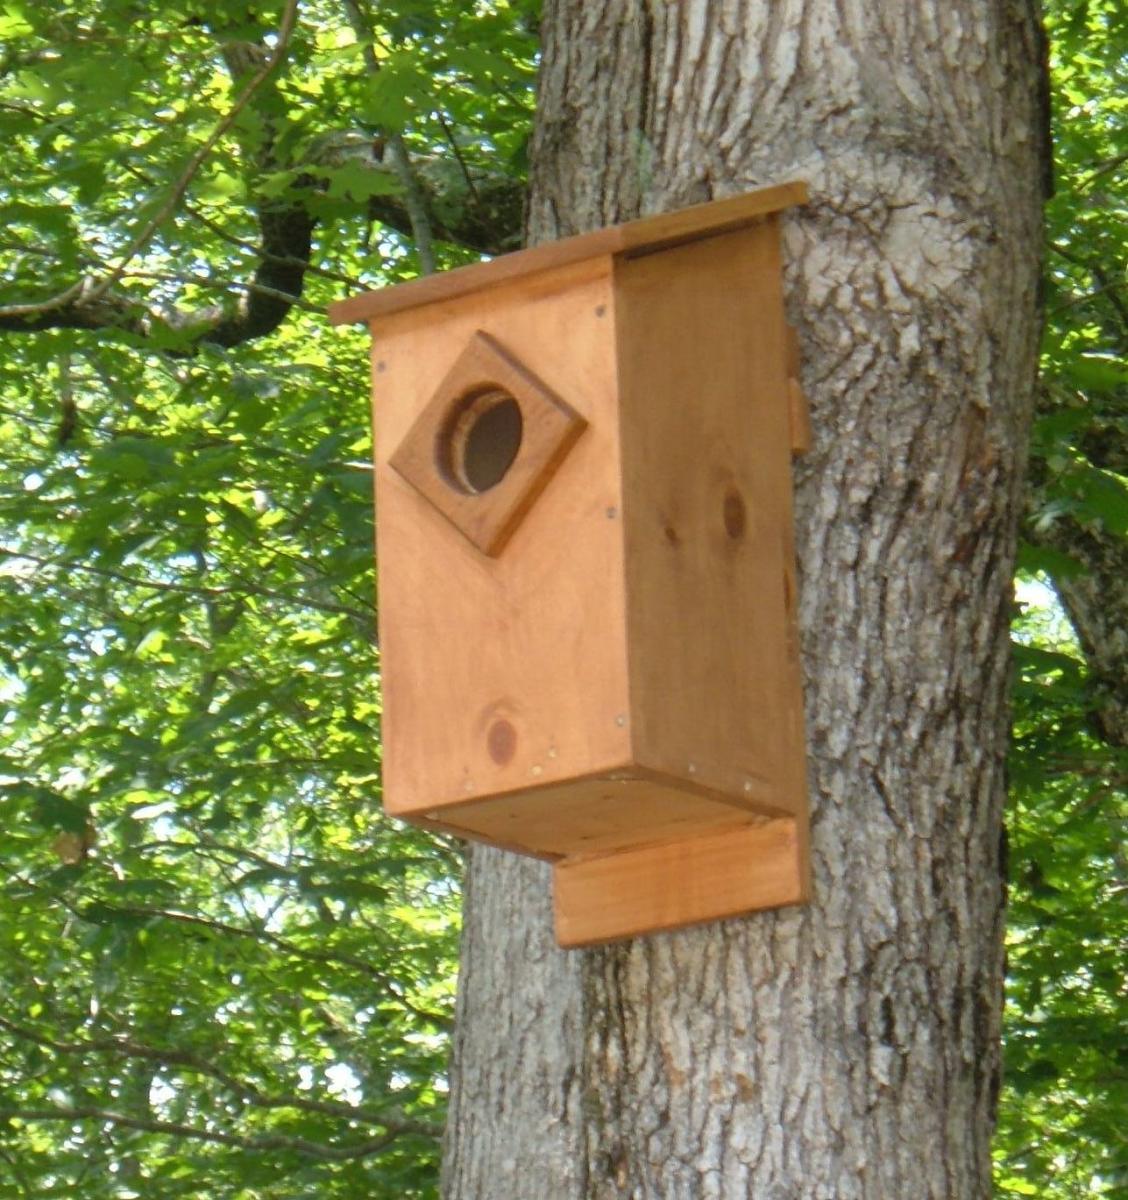 Screech Owl House Plans How to Build a Screech Owl Box